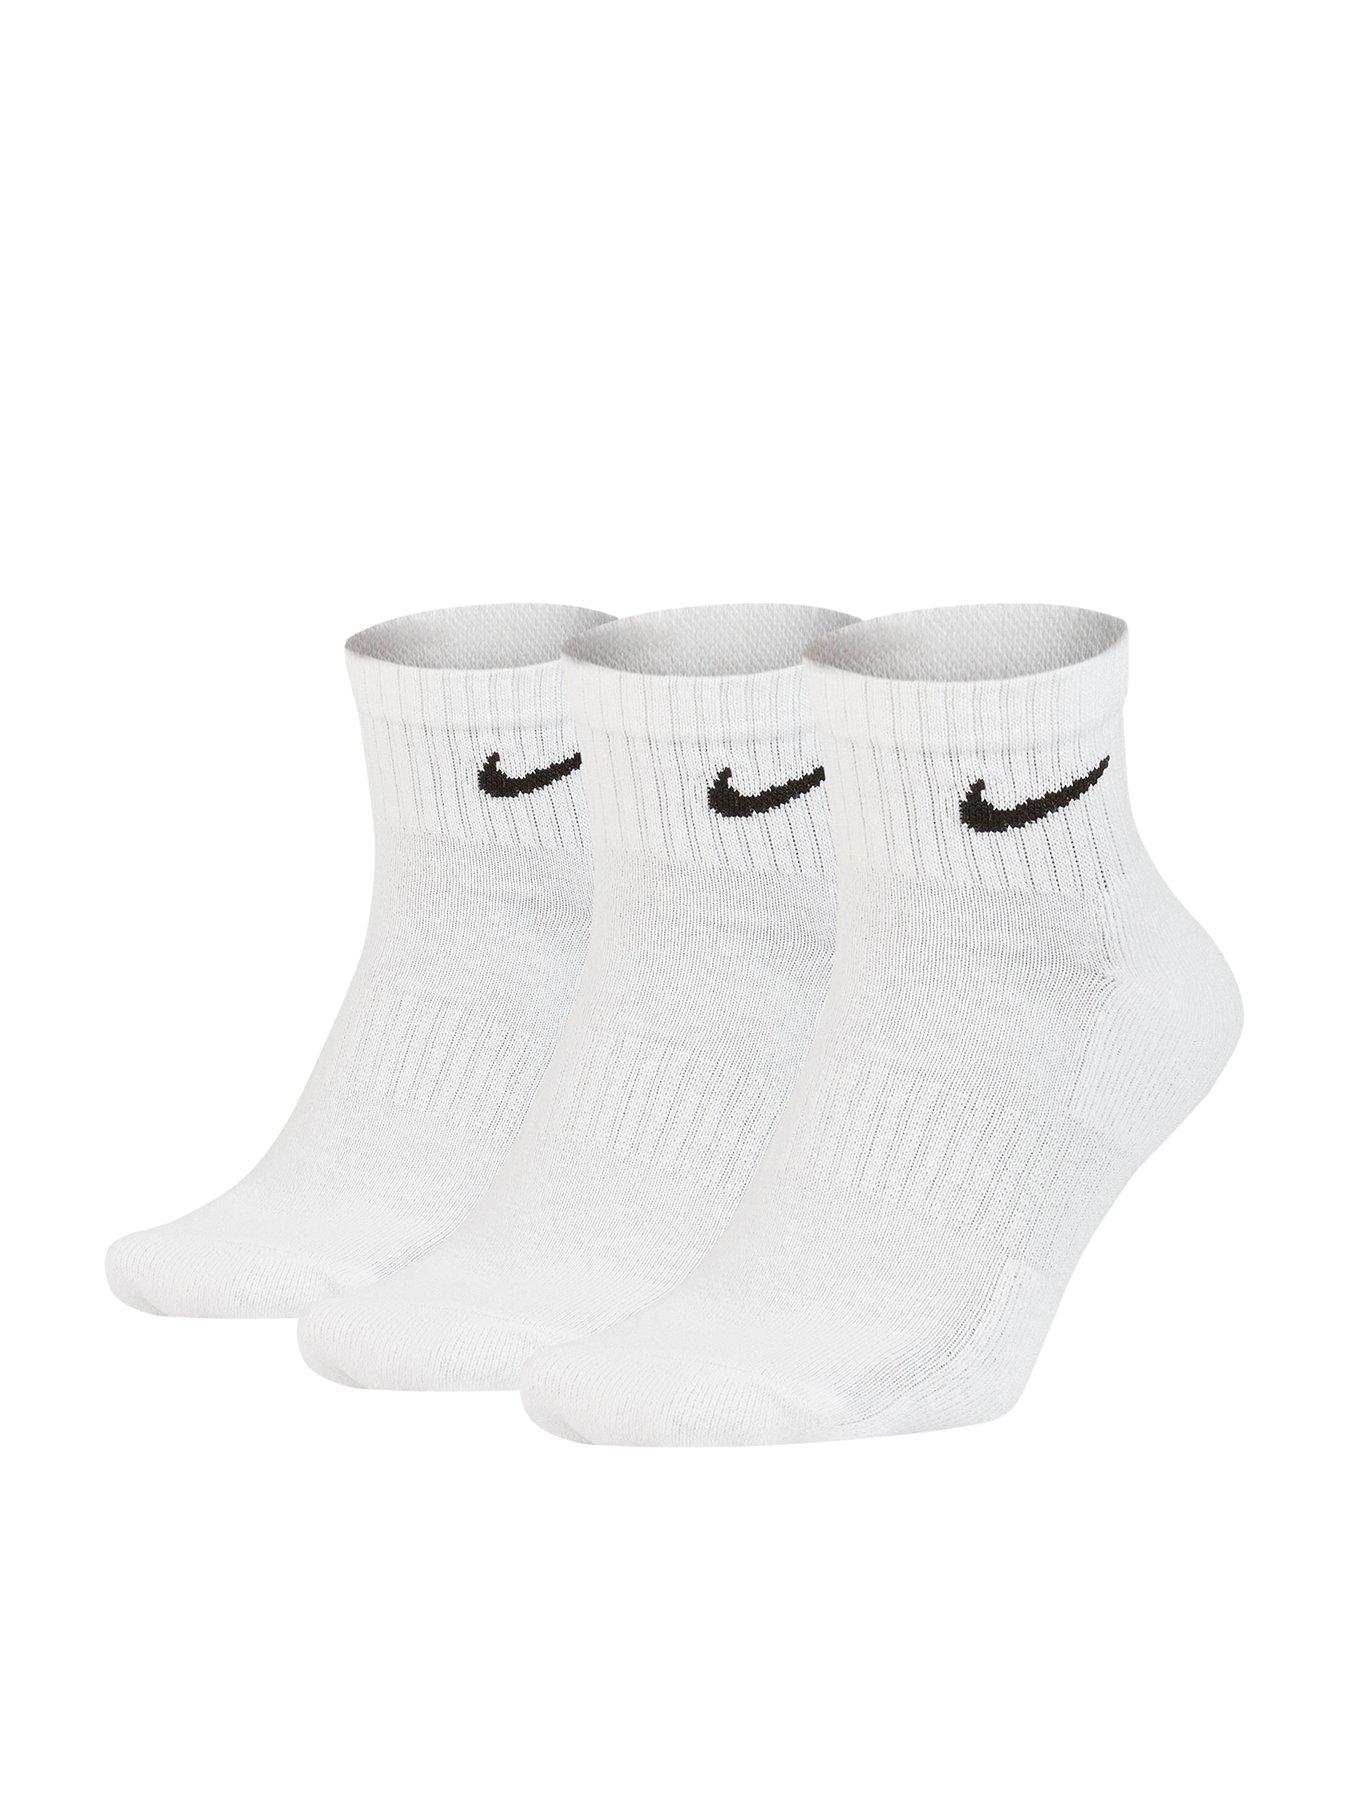 long white nike socks